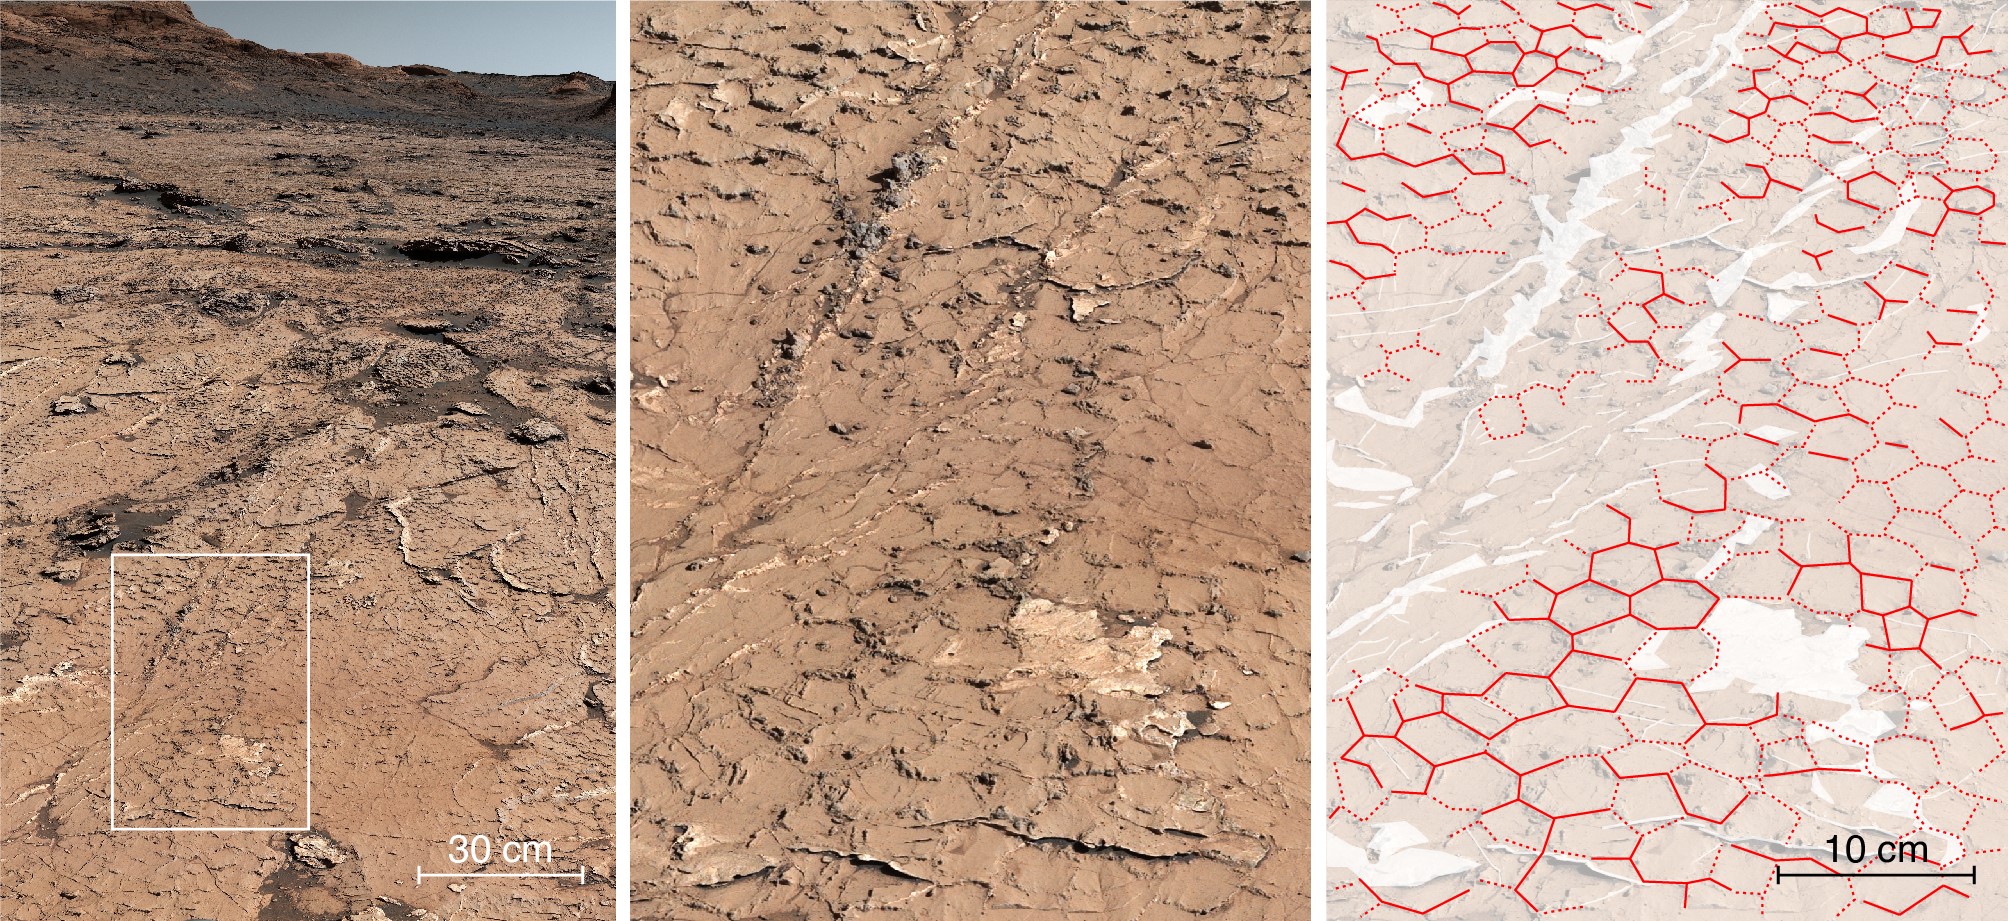 Motif fossile hexagonal dans les roches sédimentaires analysées par Curiosity au 3154e jour de sa progression dans le cratère de Gale sur Mars.  © NASA/JPL-Caltech/MSSS/IRAP/Rapin et al./Nature